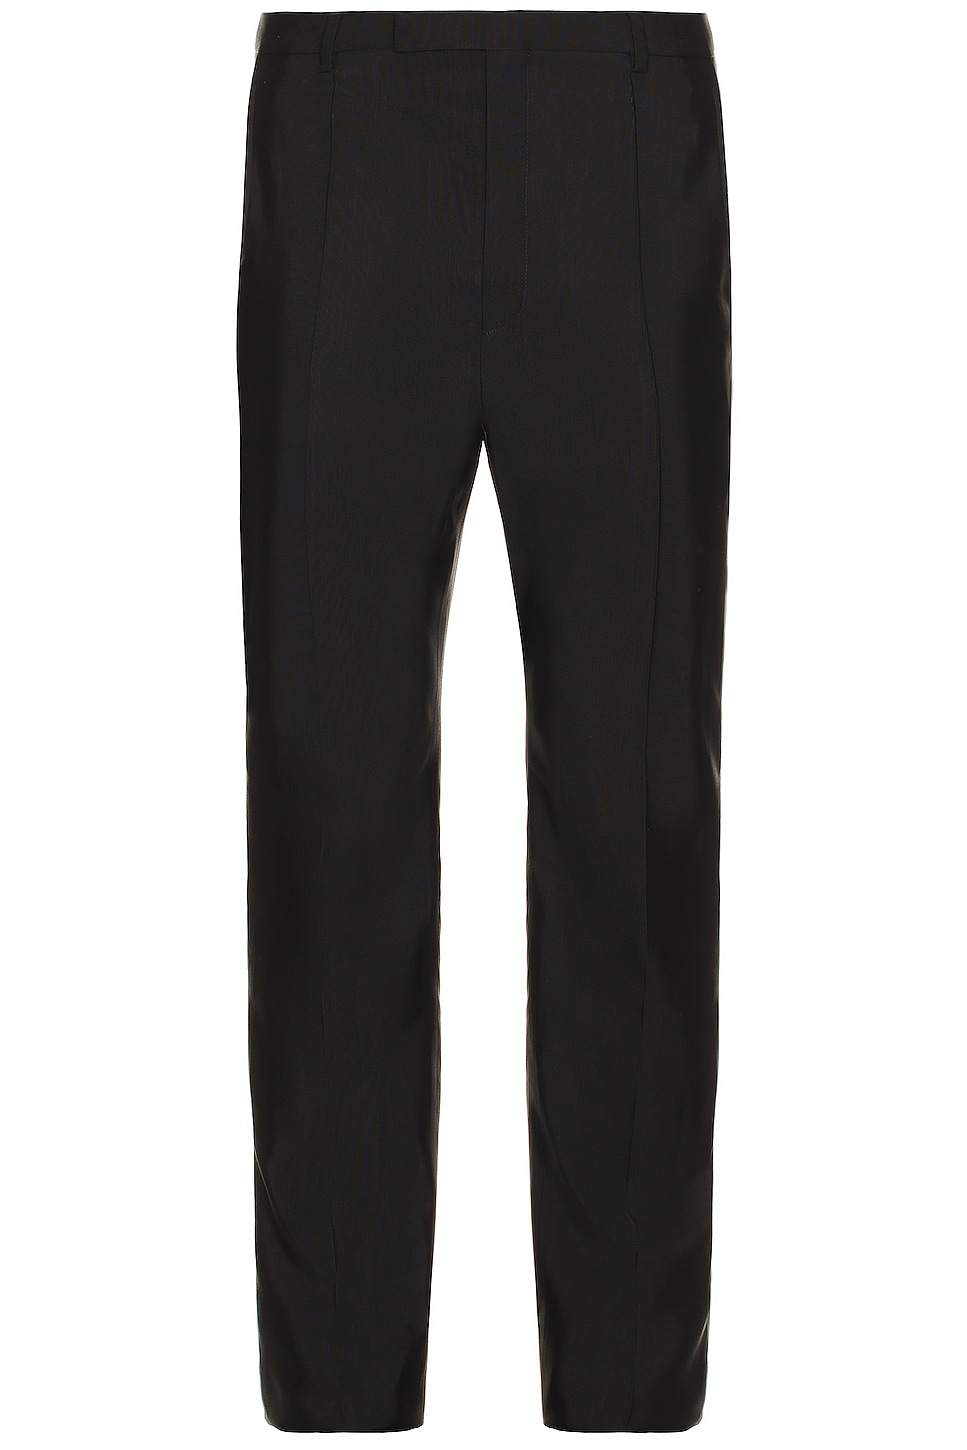 Image 1 of Saint Laurent Pantalons Taille Hau in Noir